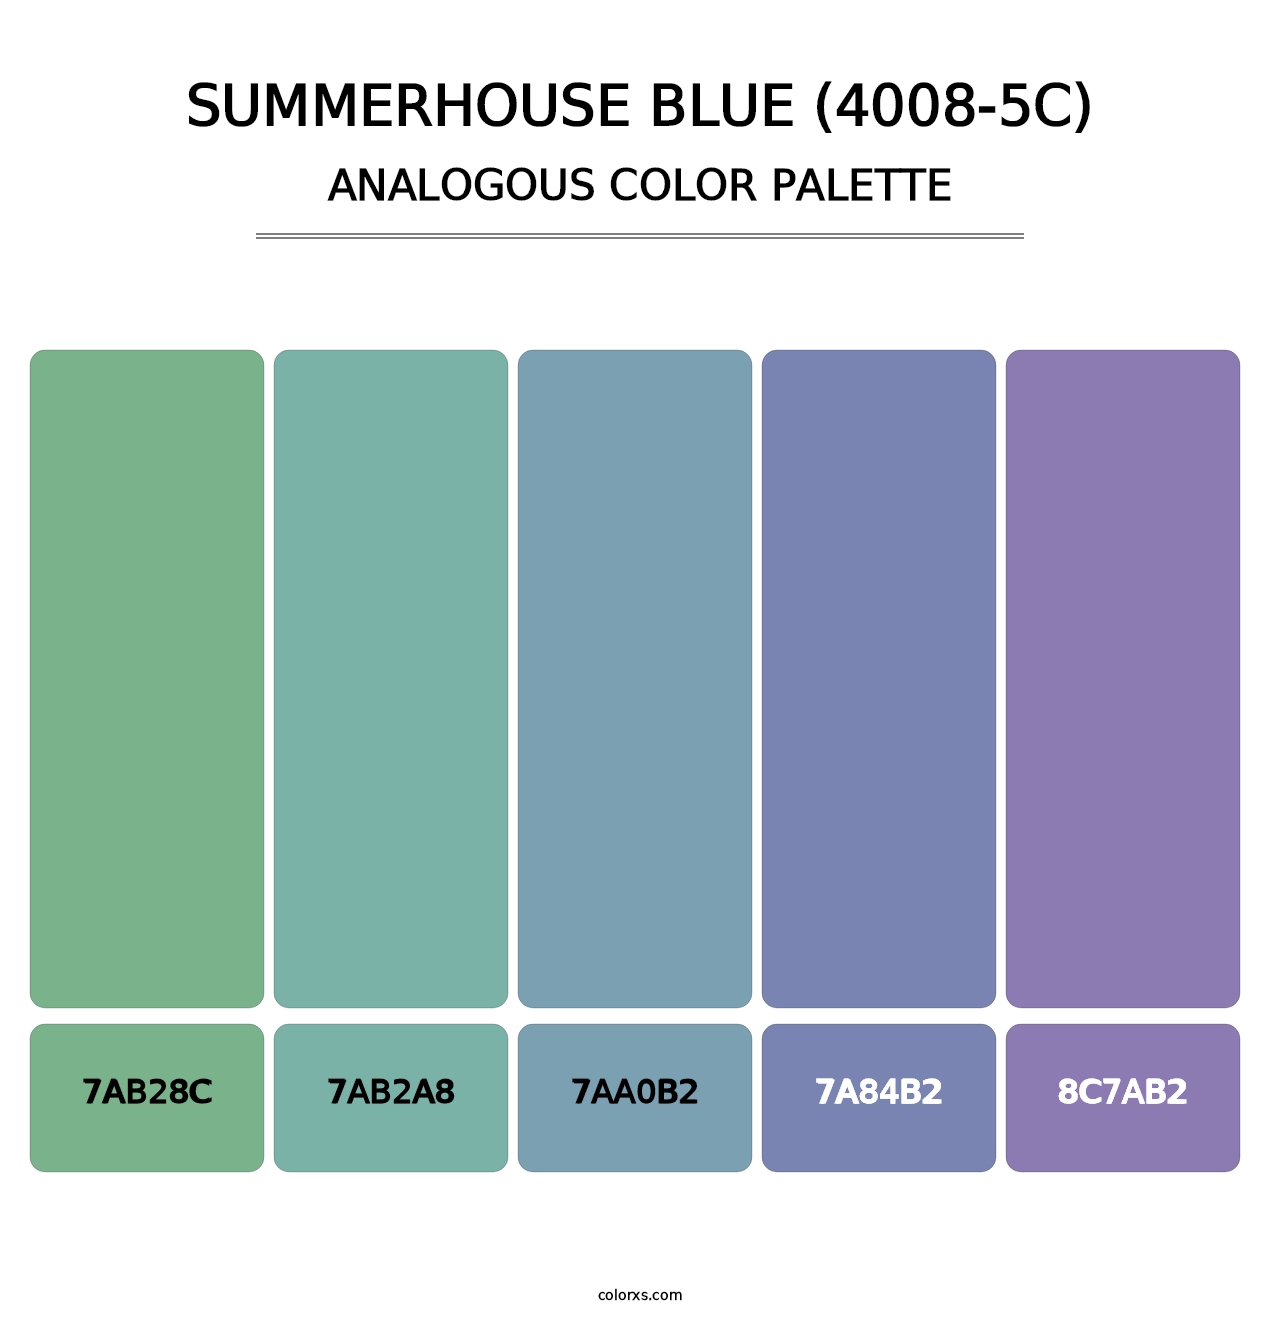 Summerhouse Blue (4008-5C) - Analogous Color Palette